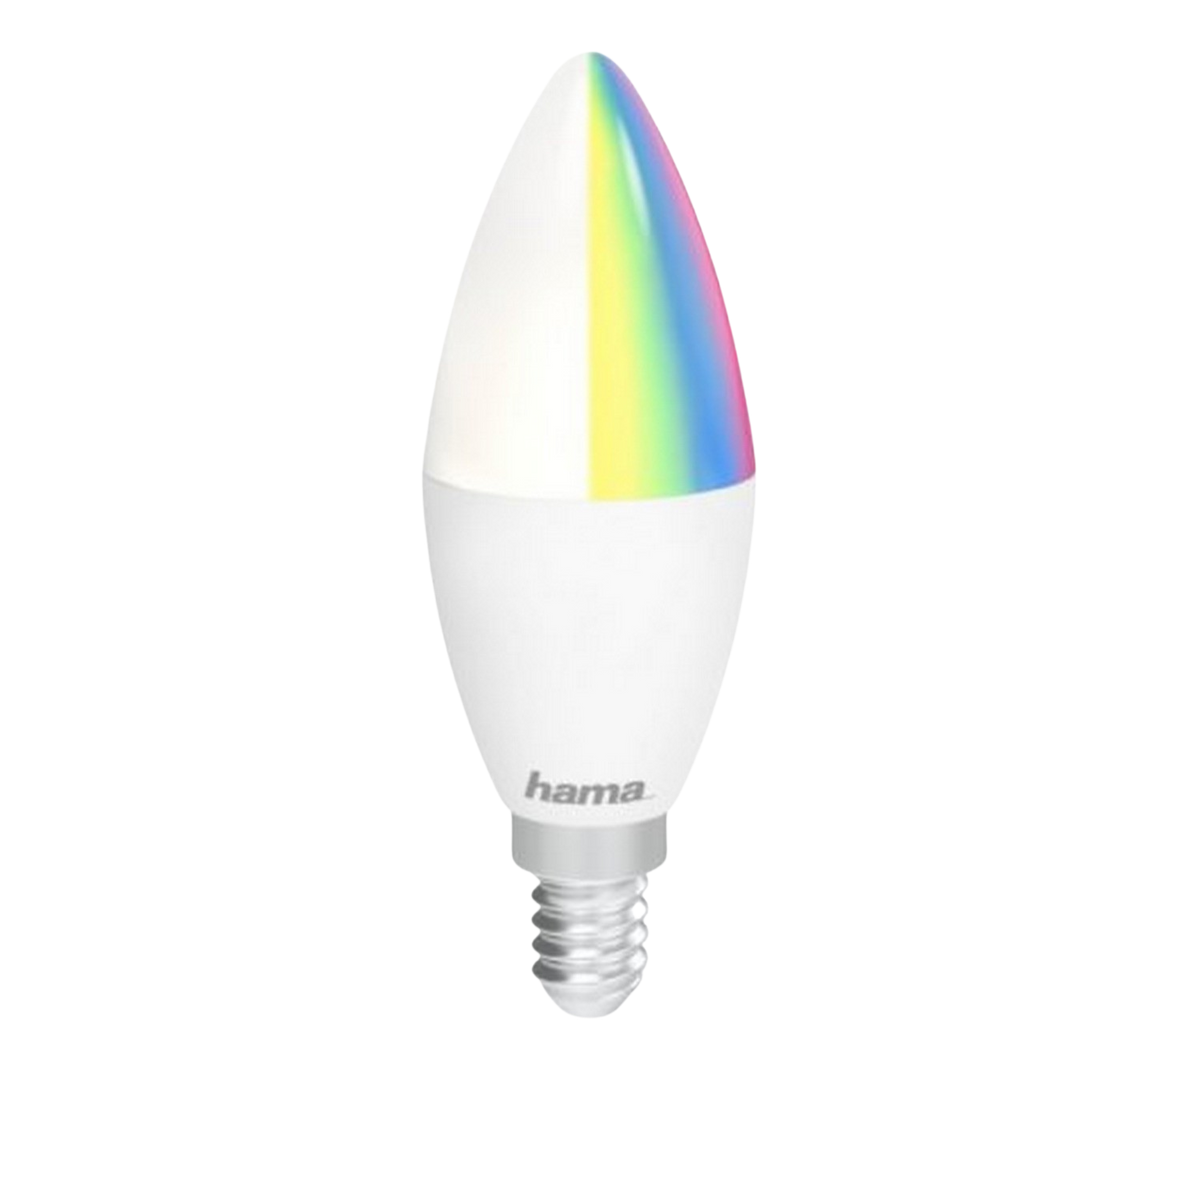 HAMA 176583 WIFI-LED-LAMPE E14 5,5W RGB, Glühbirne RGBW Weiß